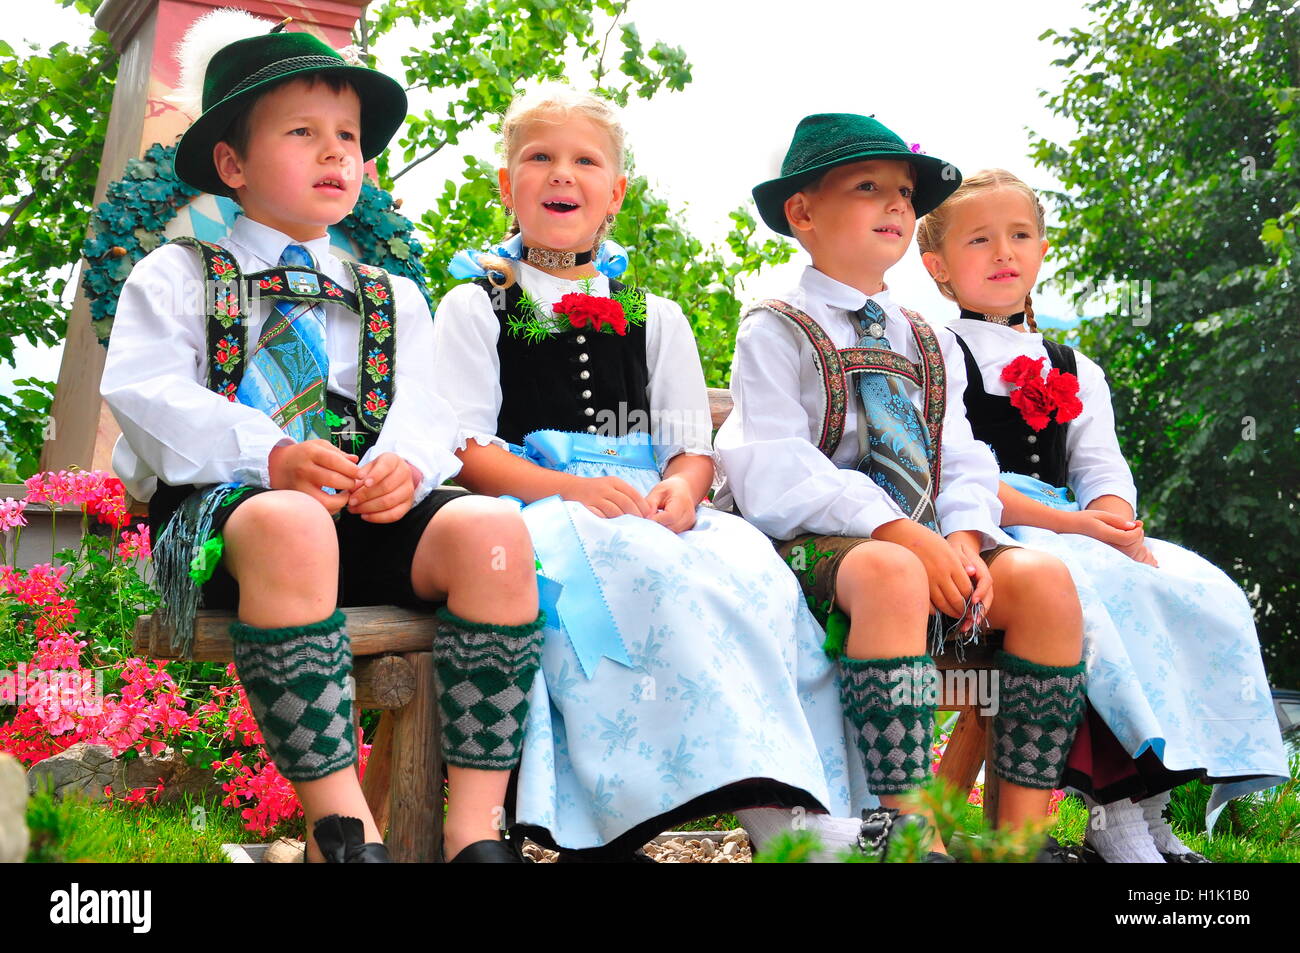 Bayern, Brauchtum, Tracht, Trachtenkinder Stock Photo